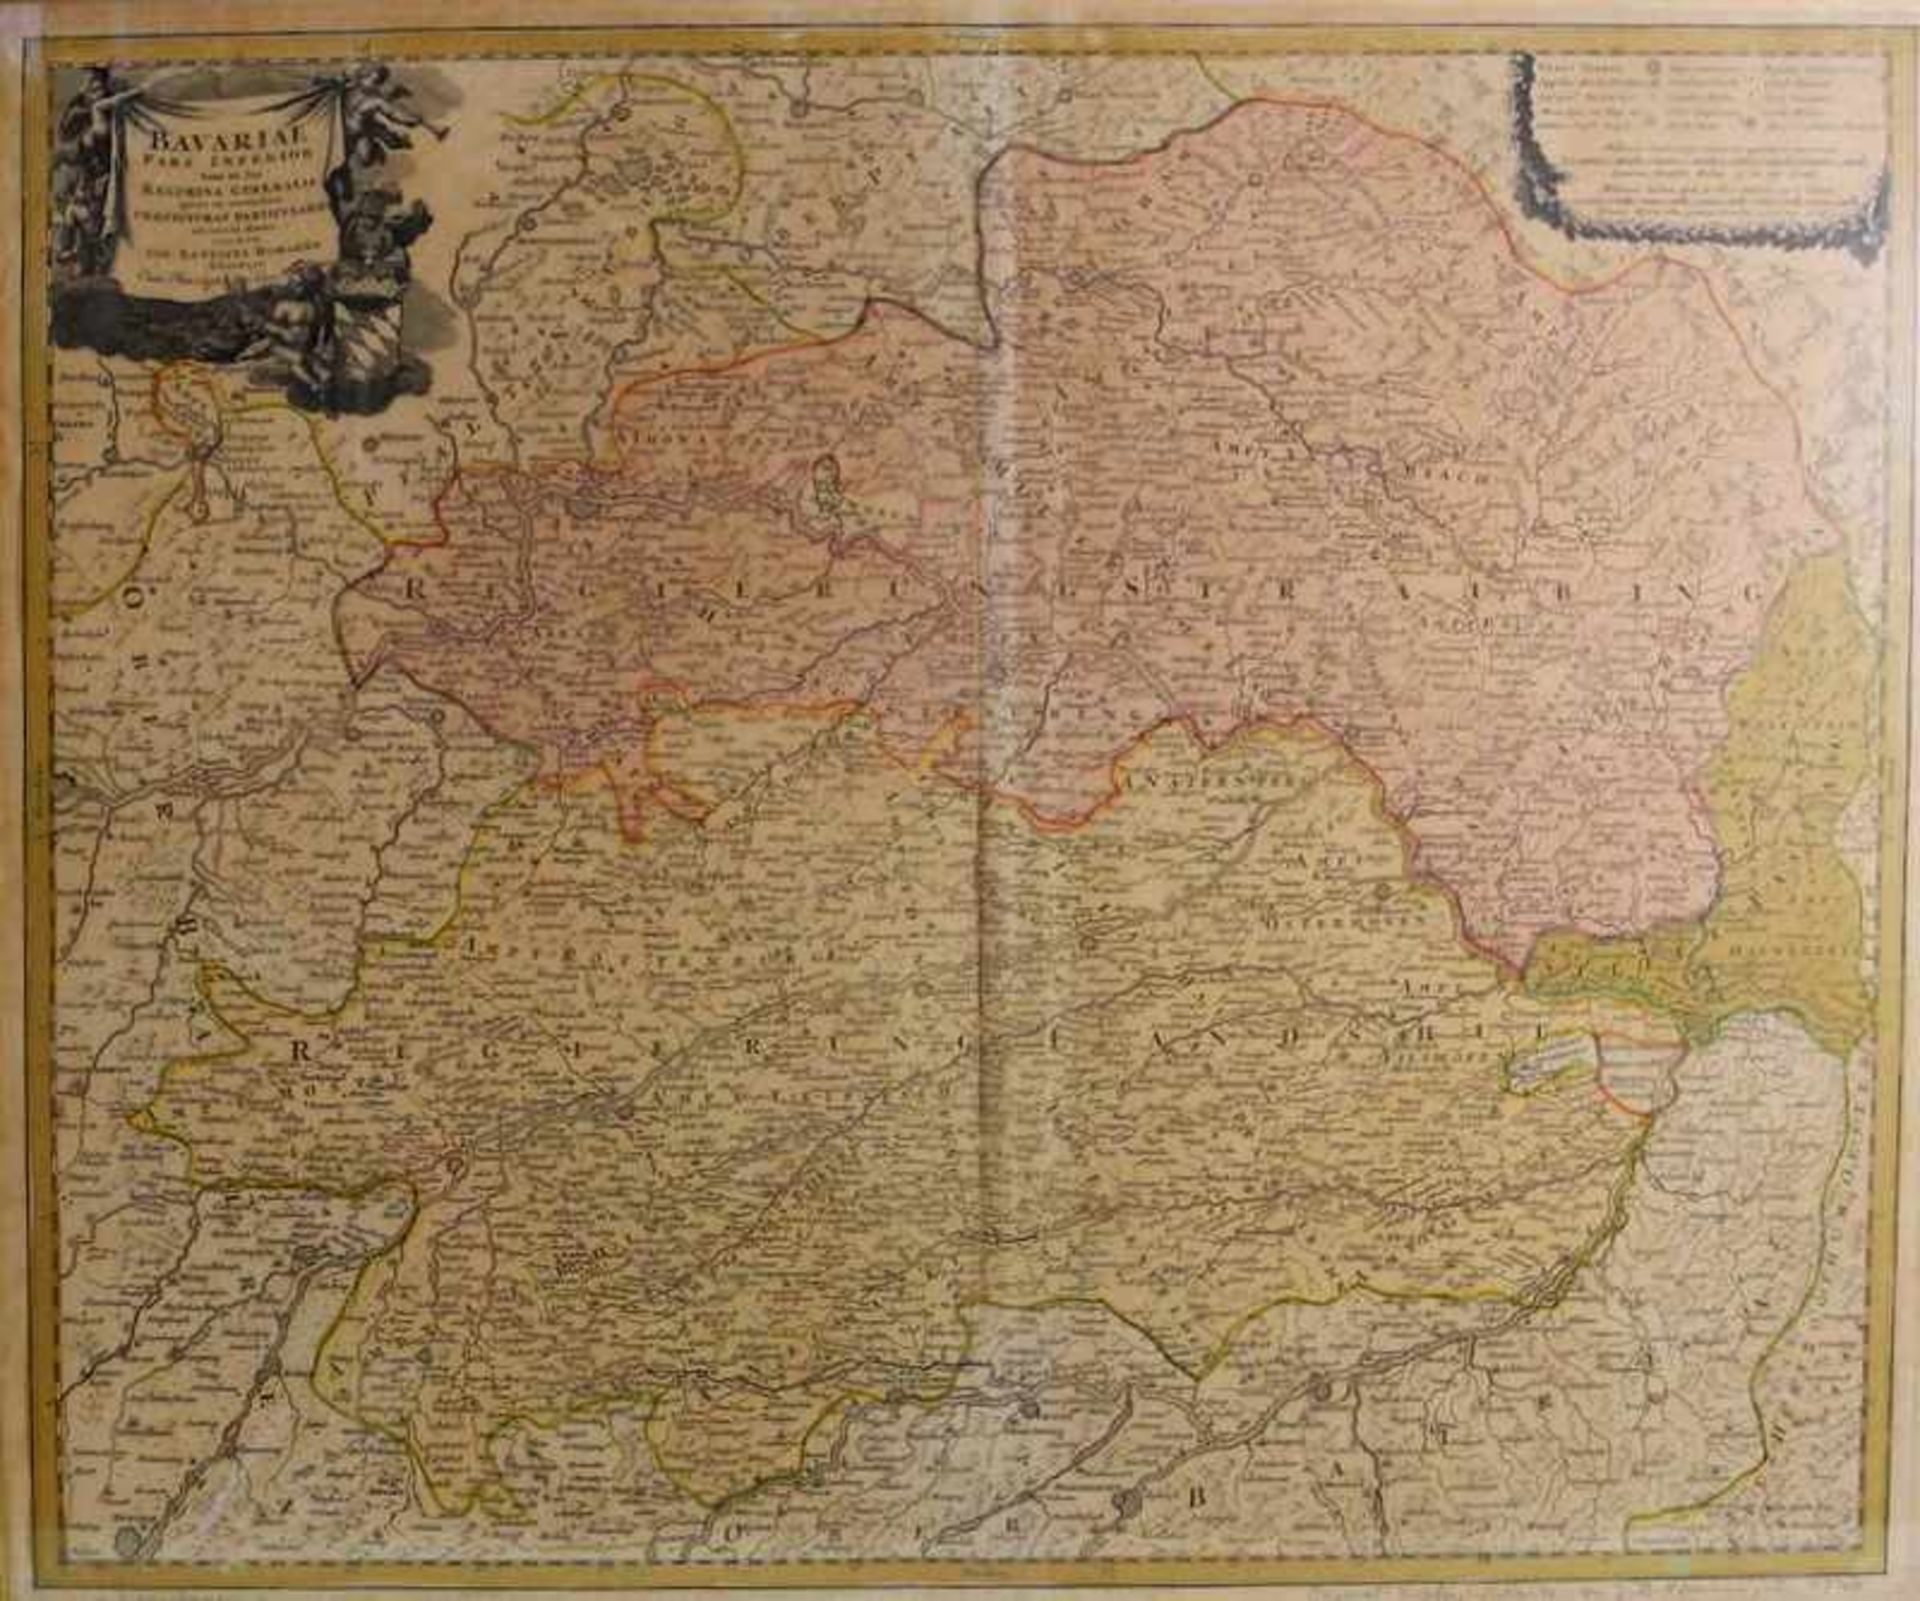 Historische Niederbayern-KarteAltkolorierter Kupferstich/Papier. Karte von Johann Baptist Homann aus